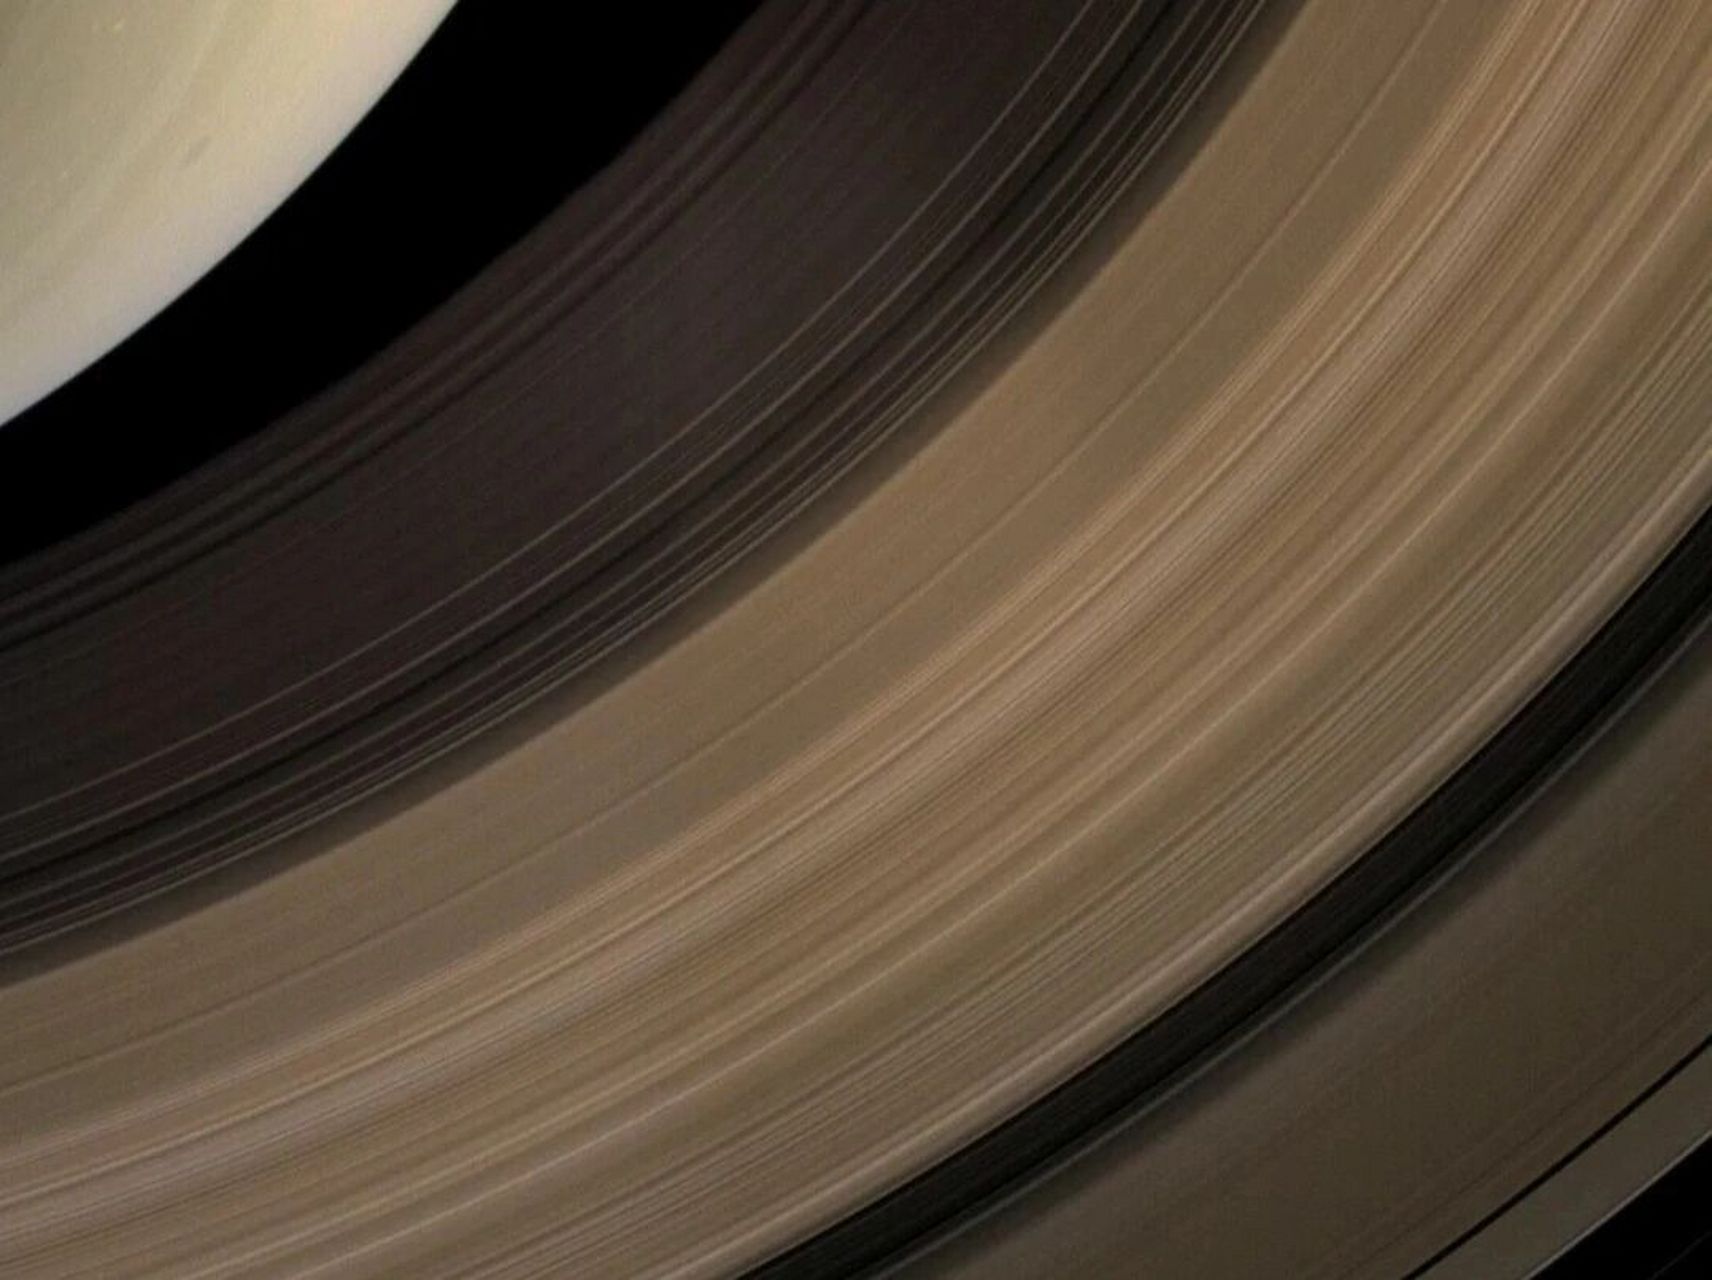 土星光环 用手机图片